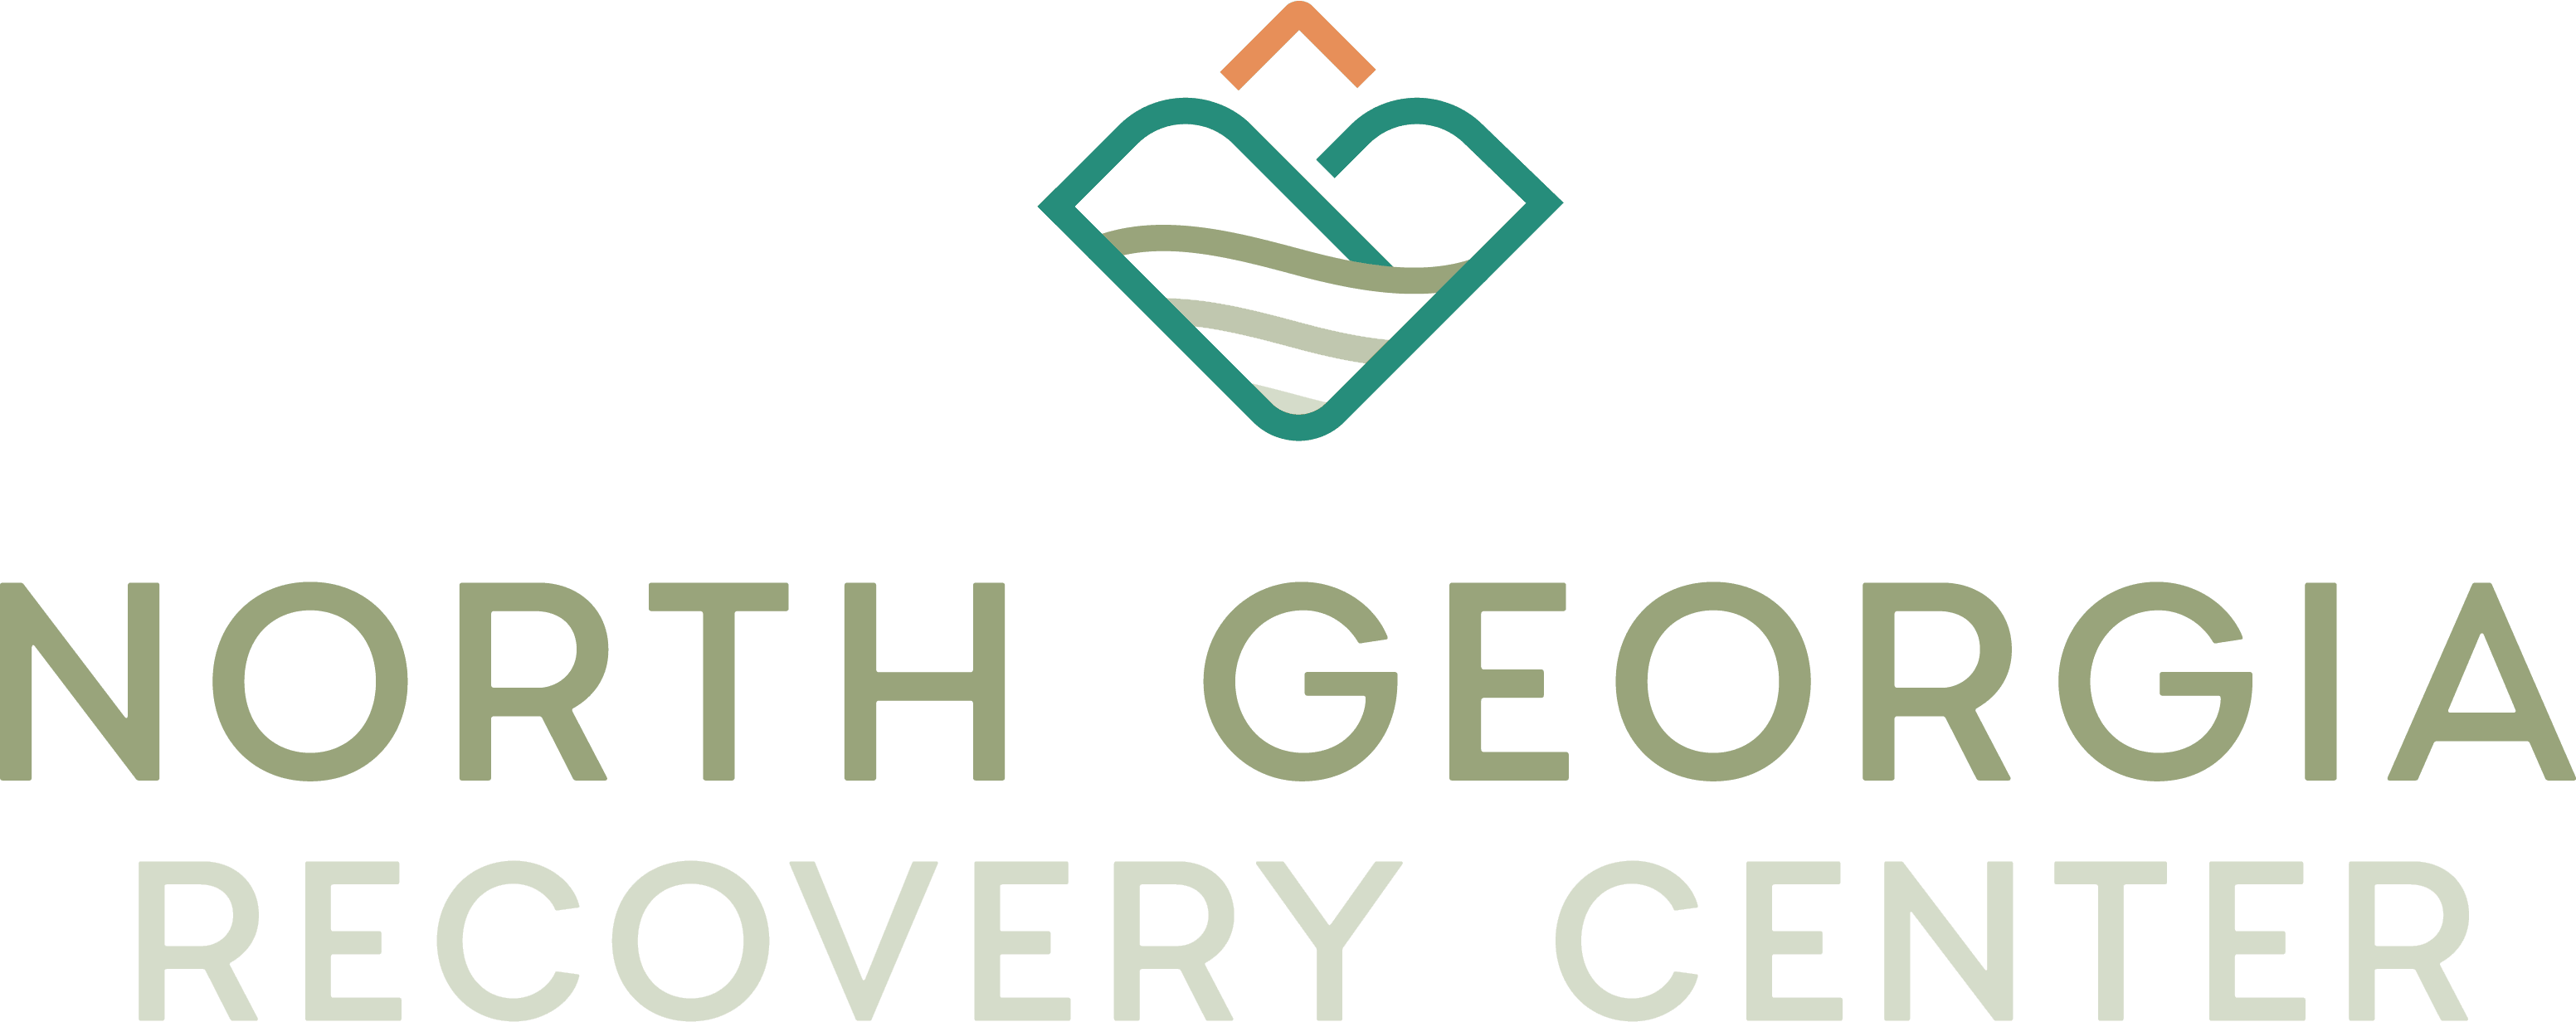 North Georgia Recovery Center logo